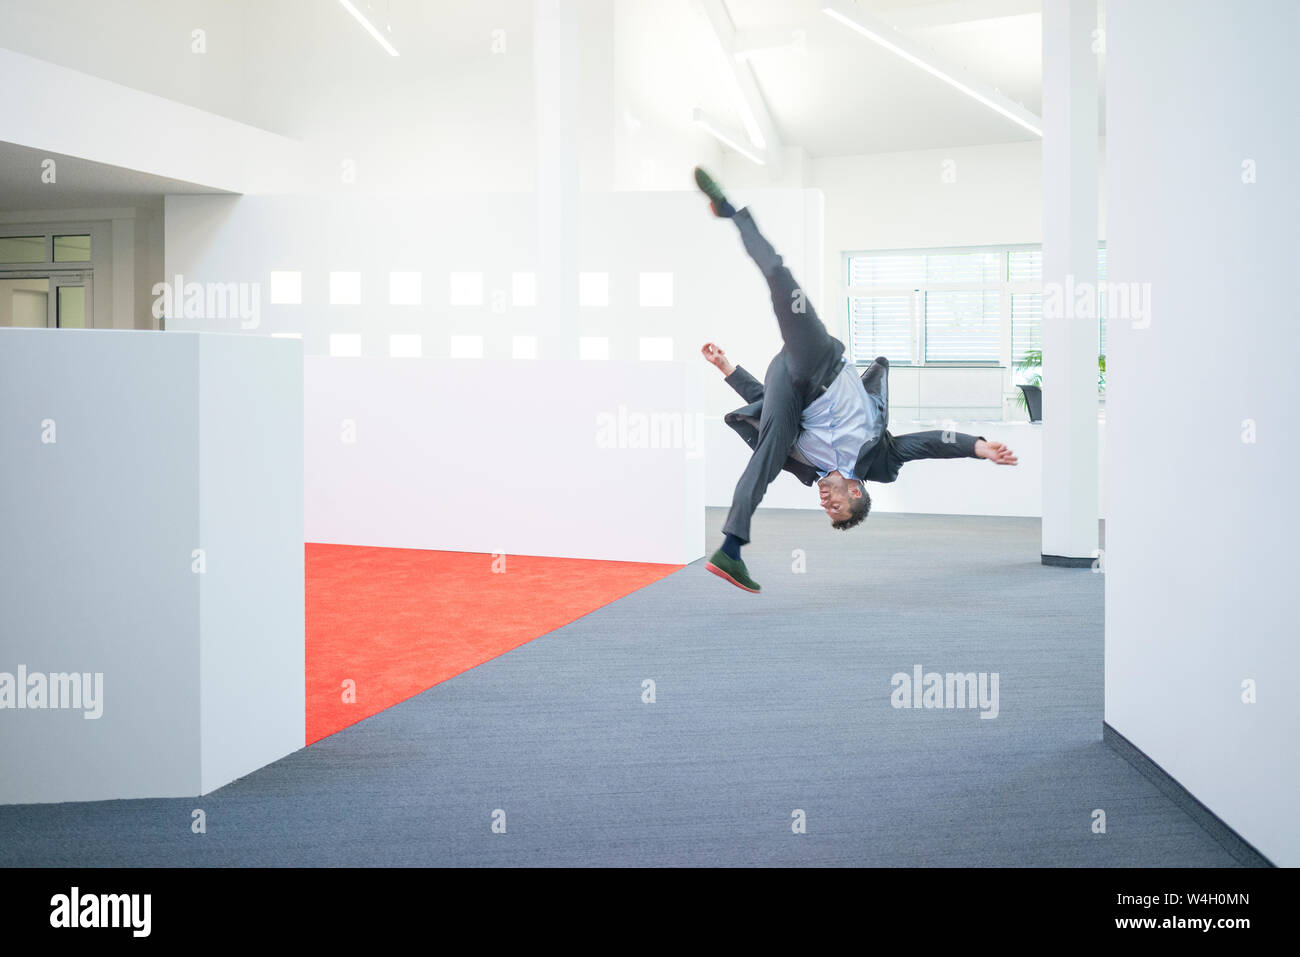 Empresario saltar en mitad del aire sobre el suelo de su oficina Foto de stock